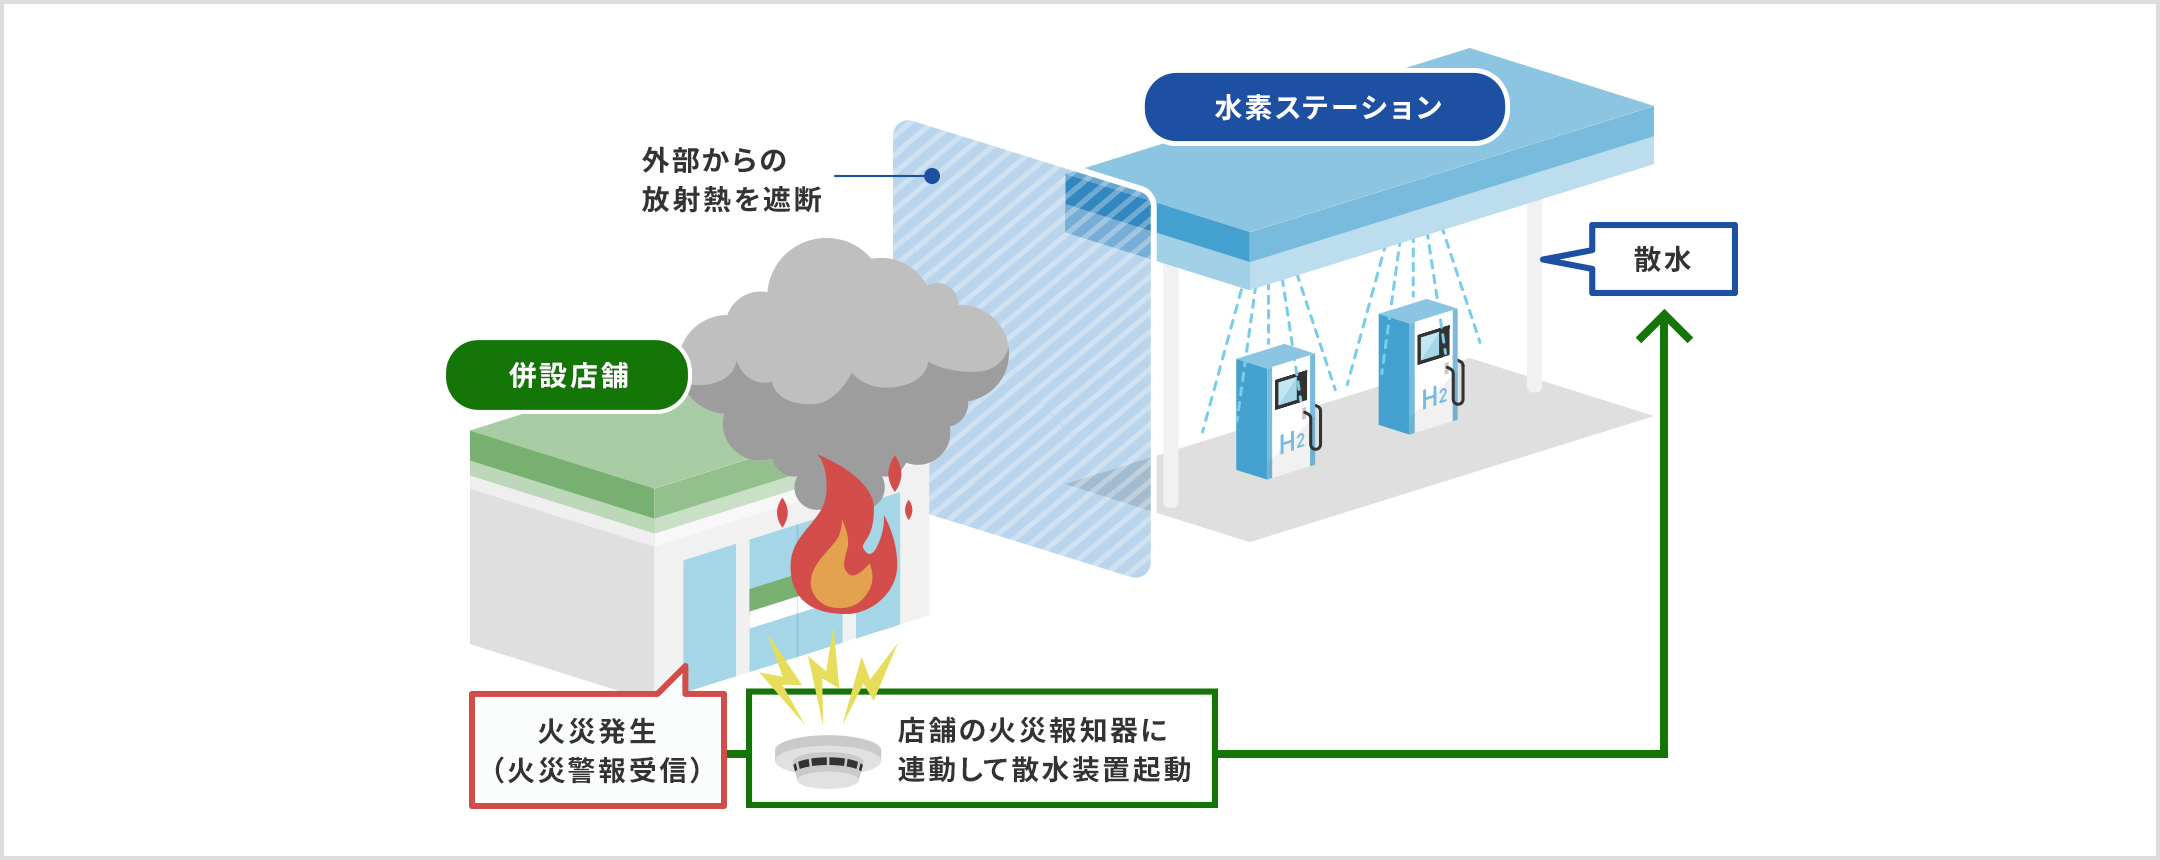 イラスト: 併設店舗で火災発生（火災警報受信）。店舗の火災報知器に連動して水素ステーションの散水装置起動。外部からの放射熱を遮断。